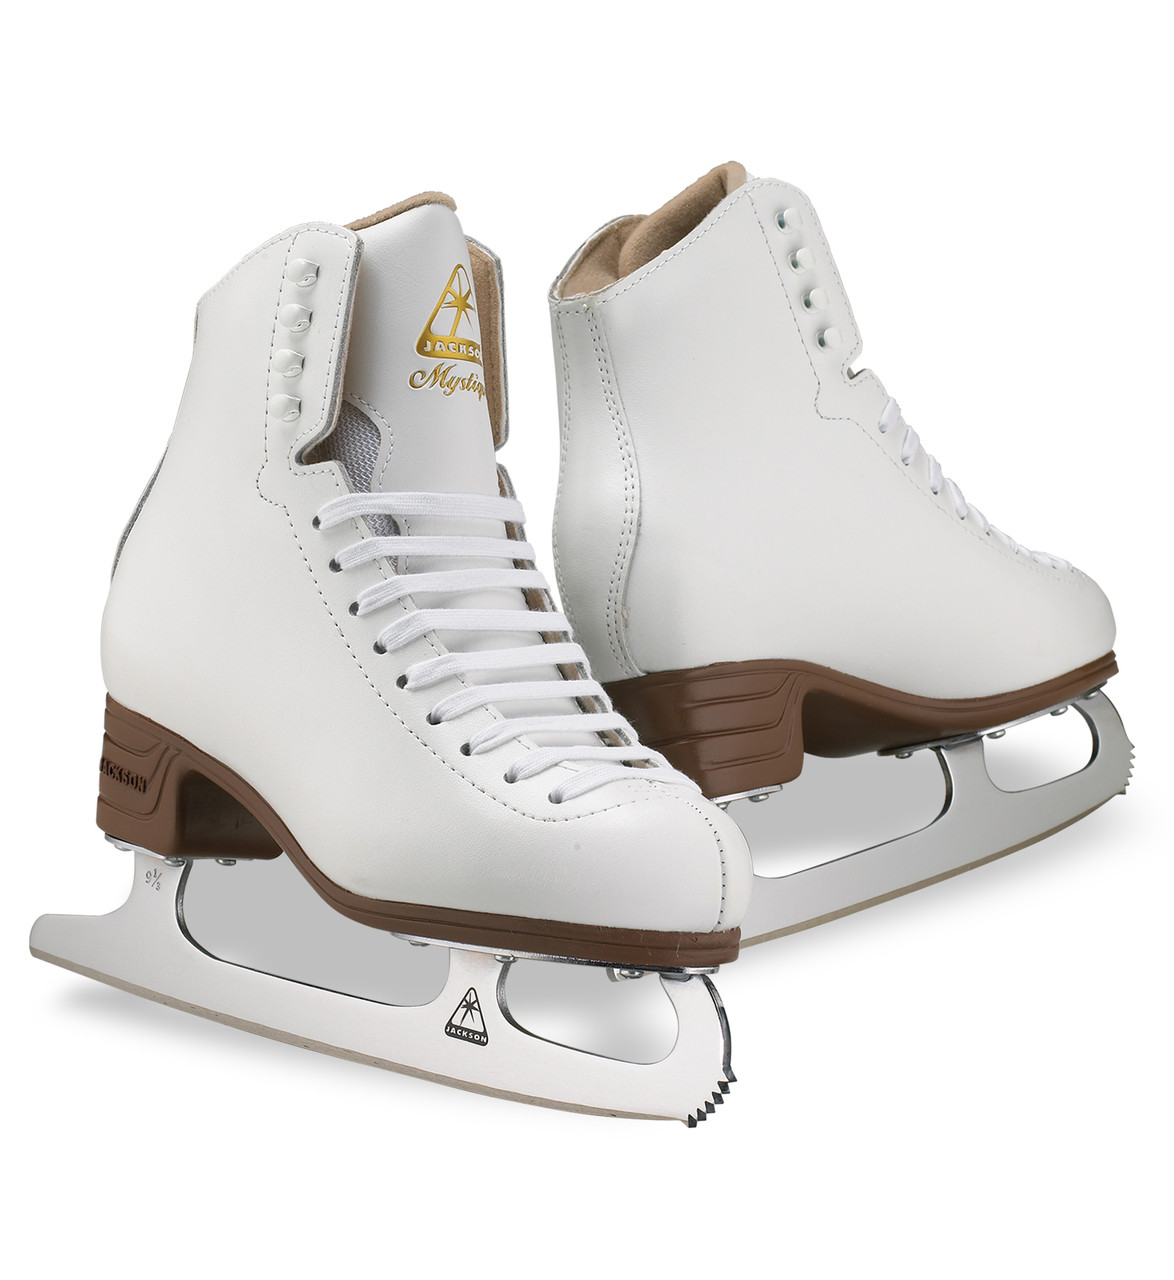 Jackson Mystique Ice Skates Size Chart